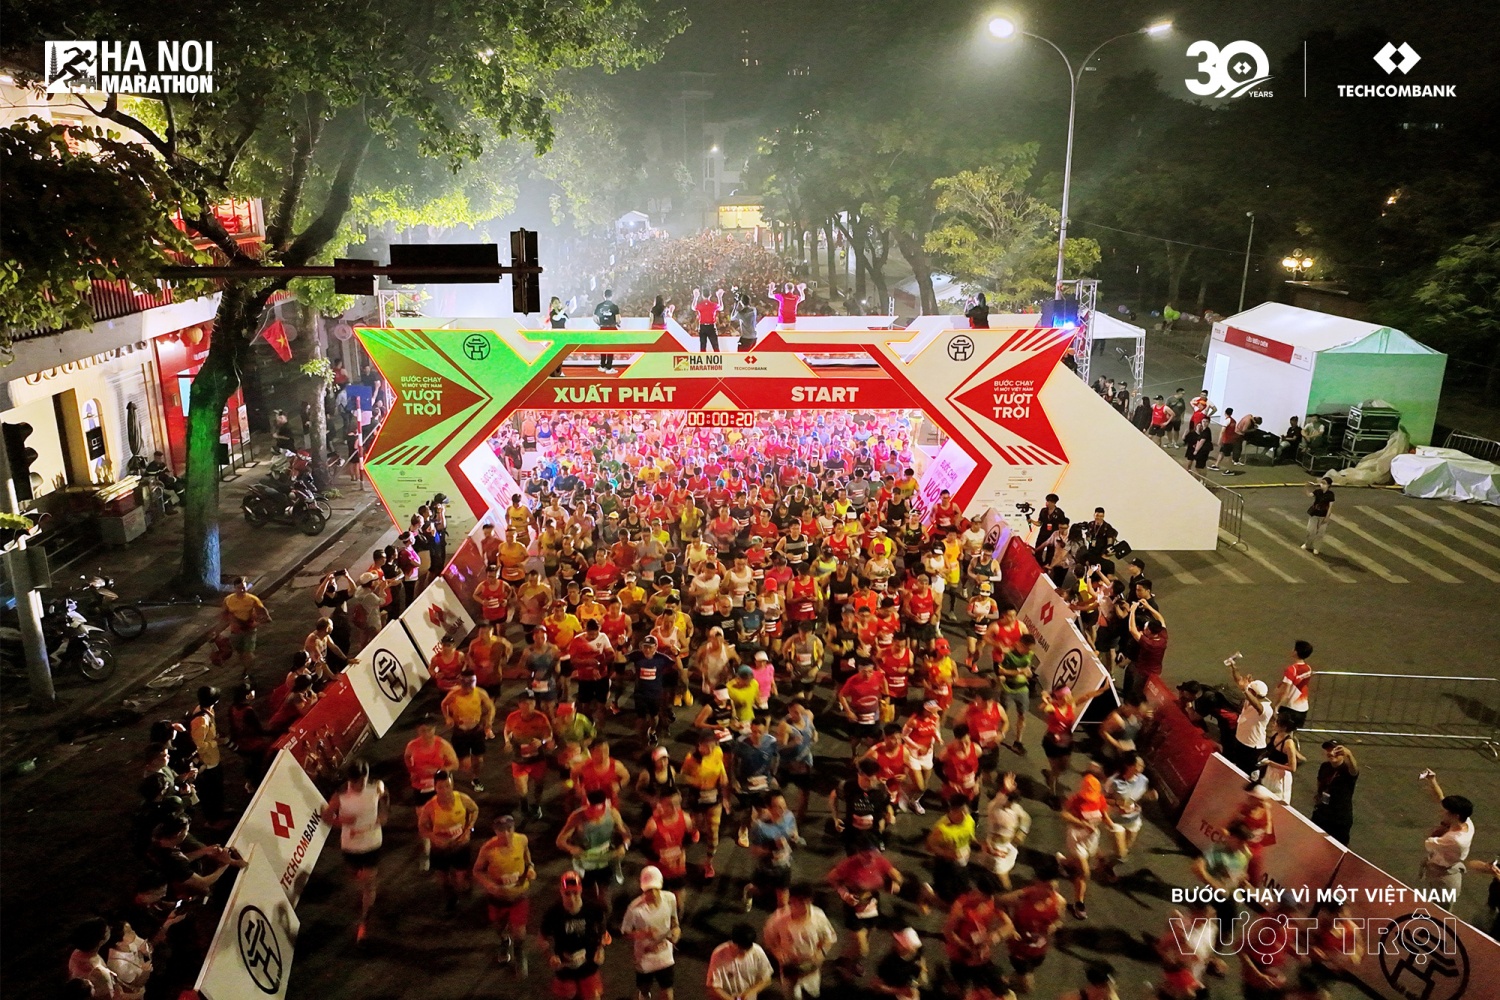 Khởi động mùa thứ 3, Giải Marathon Quốc tế Hà Nội Techcombank